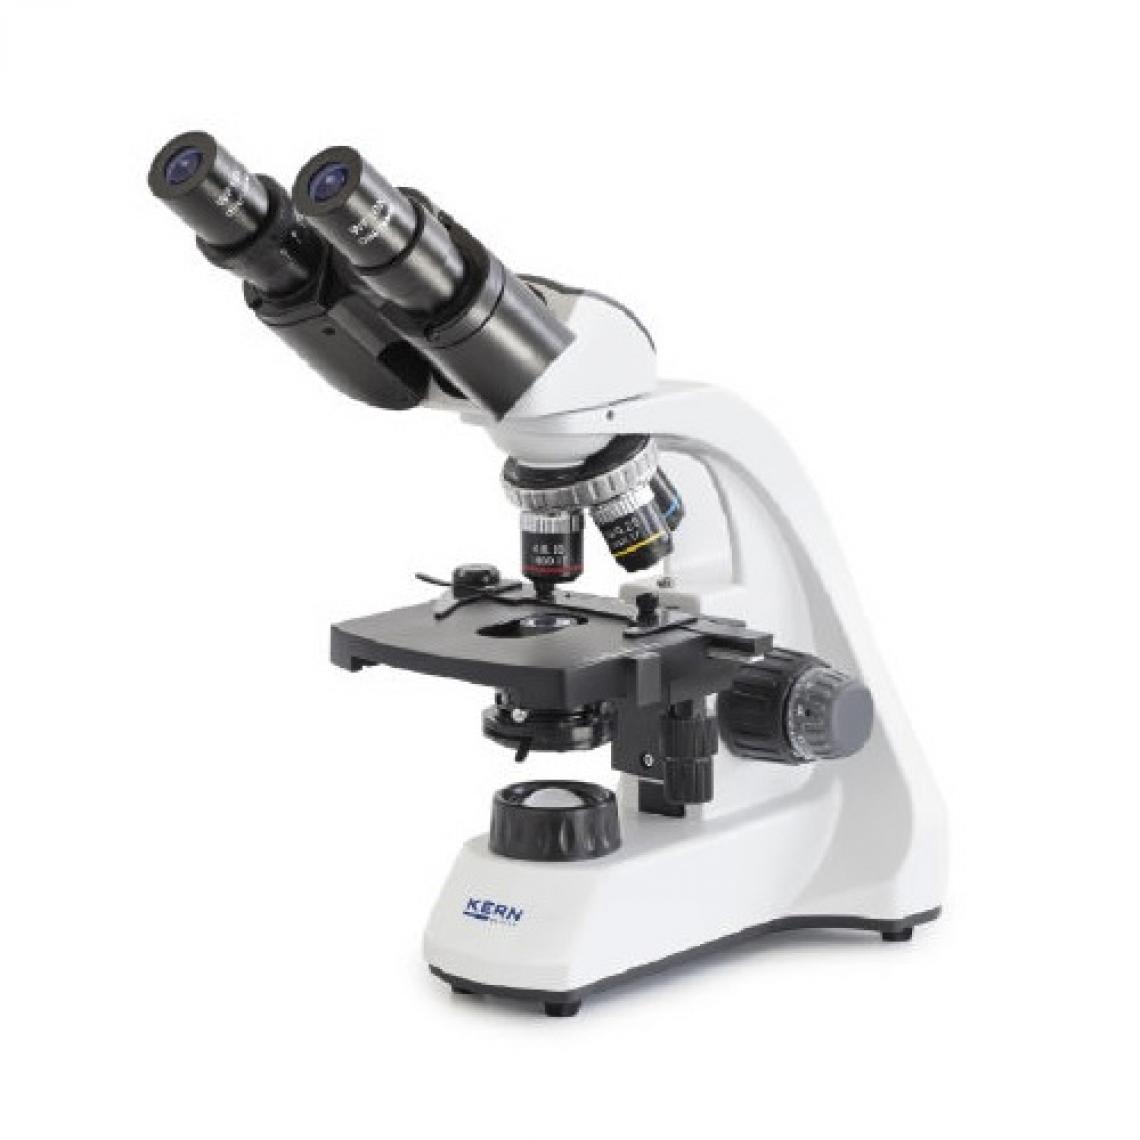 Kern sohn - Kern - Microscope scolaire à lumière transmise OBT-1 binoculaire 4x à 100x revolver 4 objectifs + platine mécanique - OBT 106 - Appareils de mesure